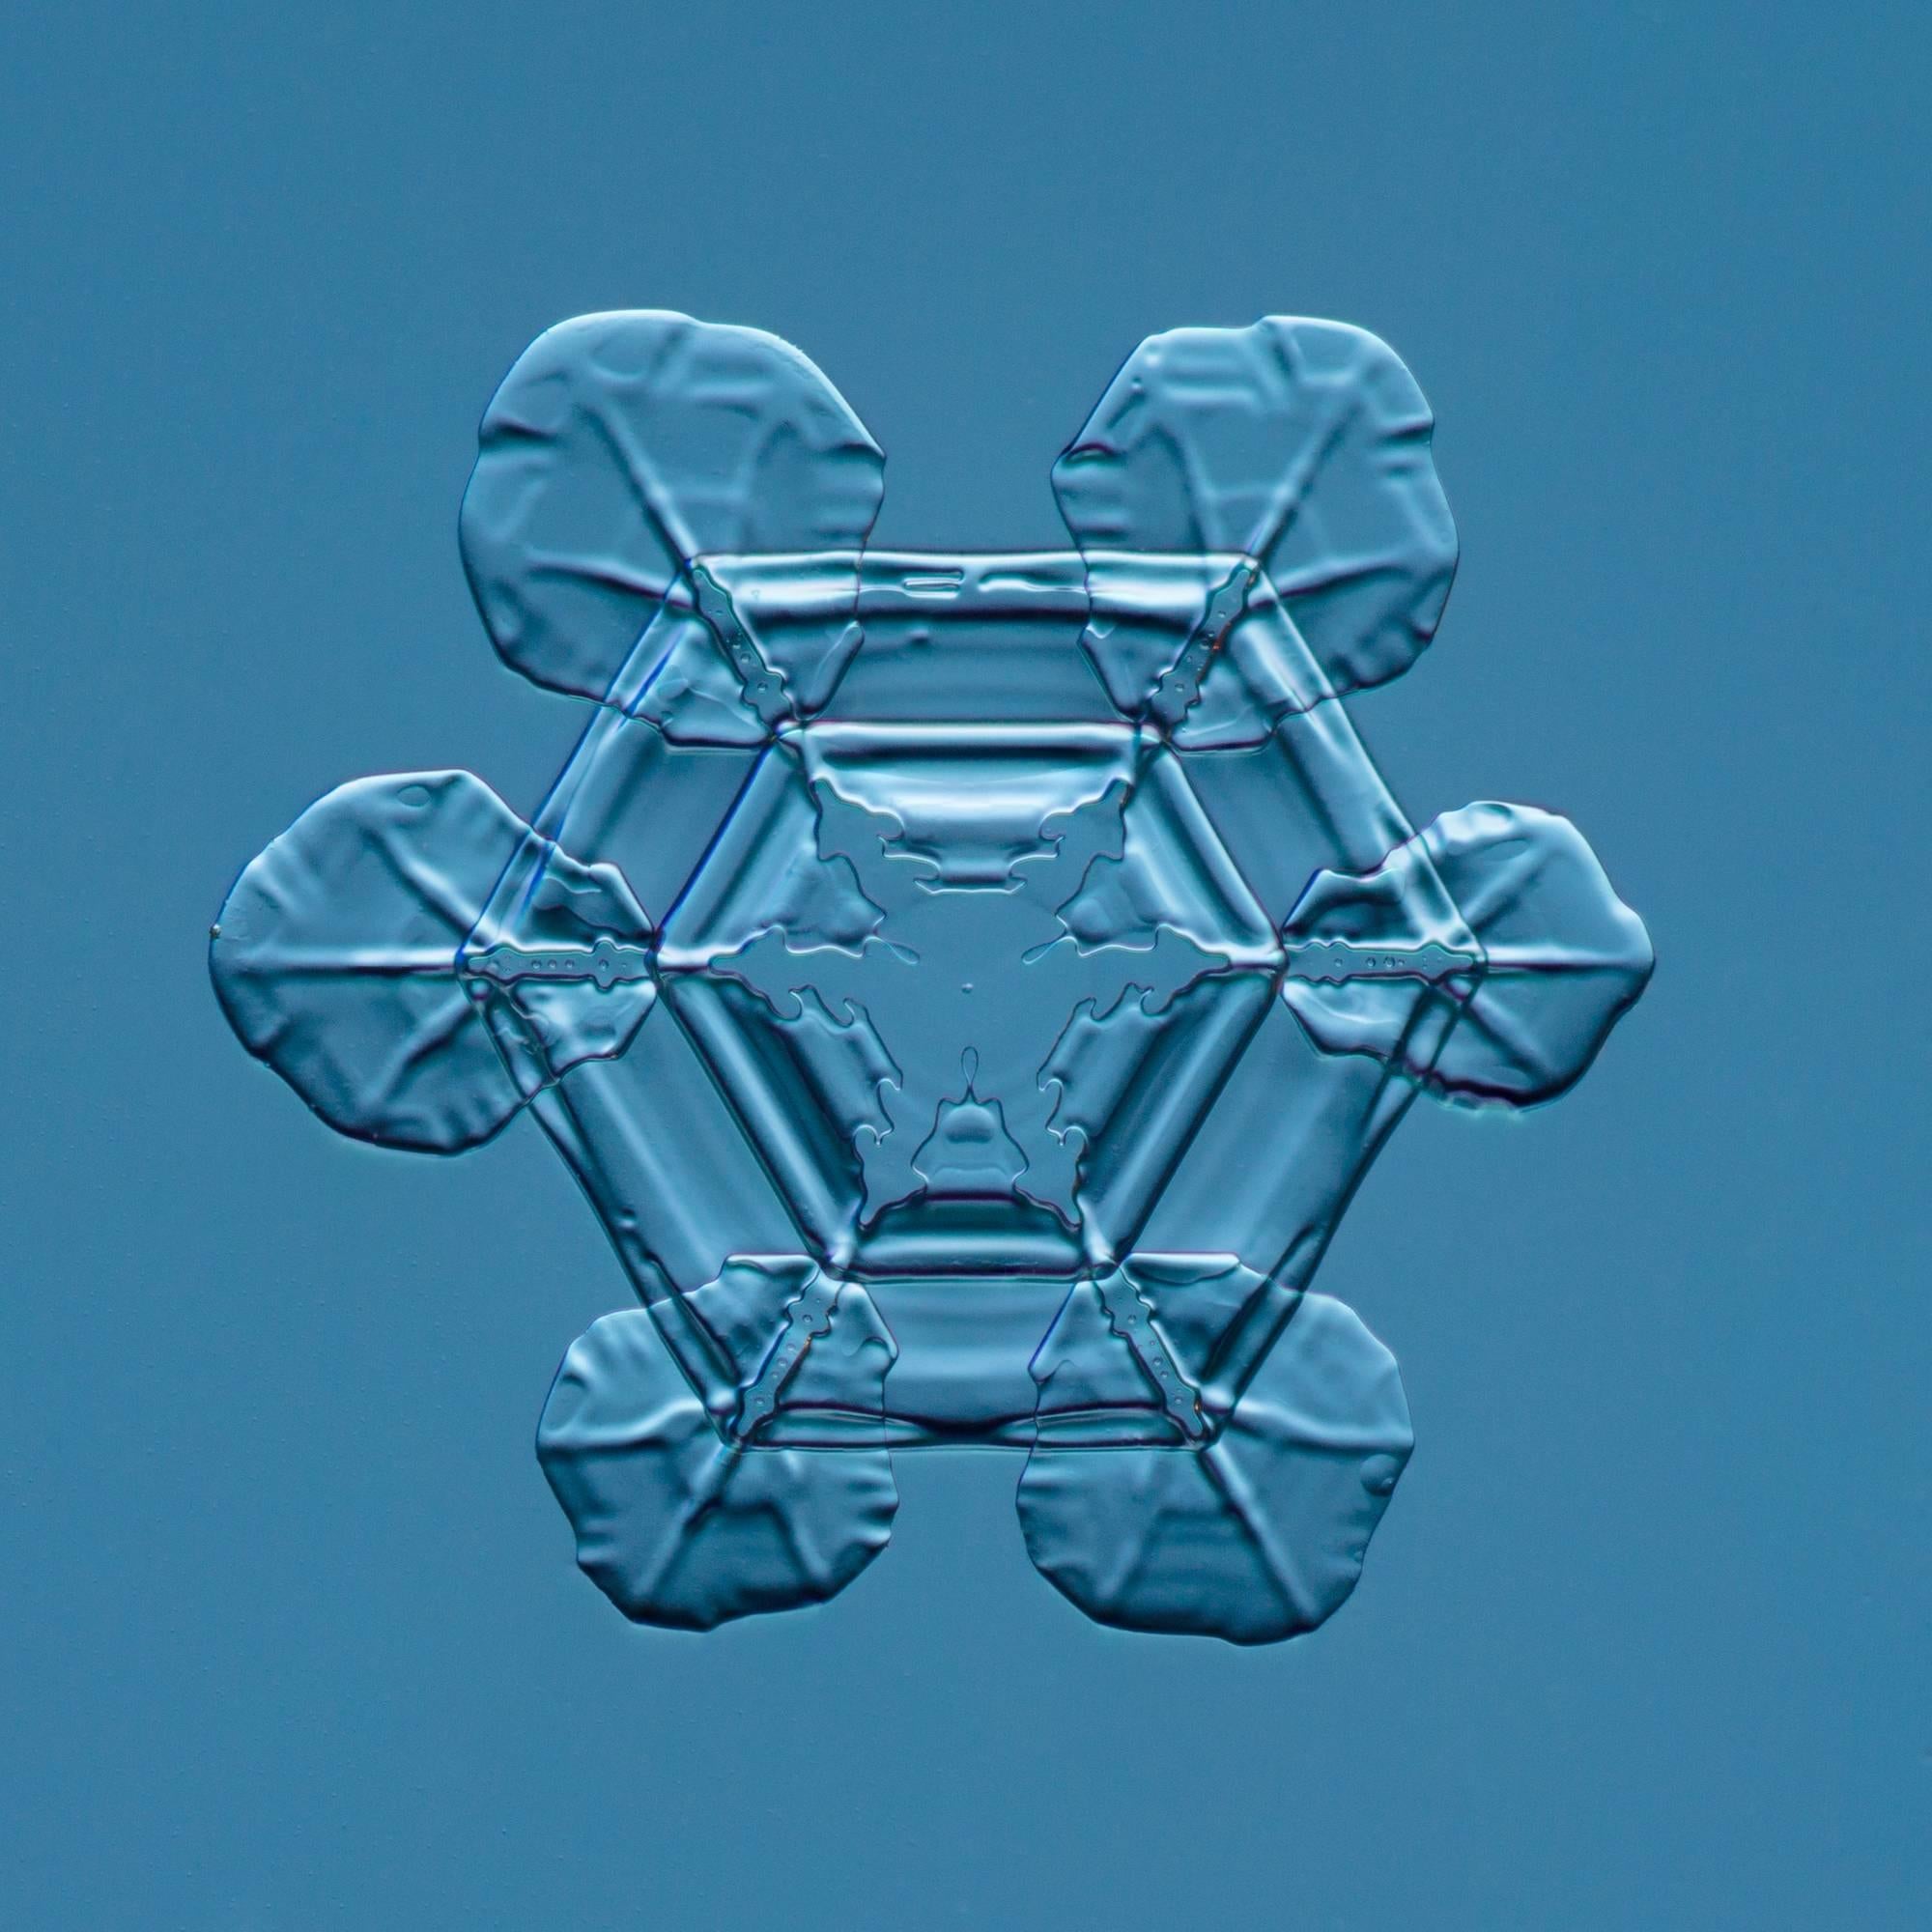 Douglas Levere Color Photograph - Snowflake 2015.02.25.007 